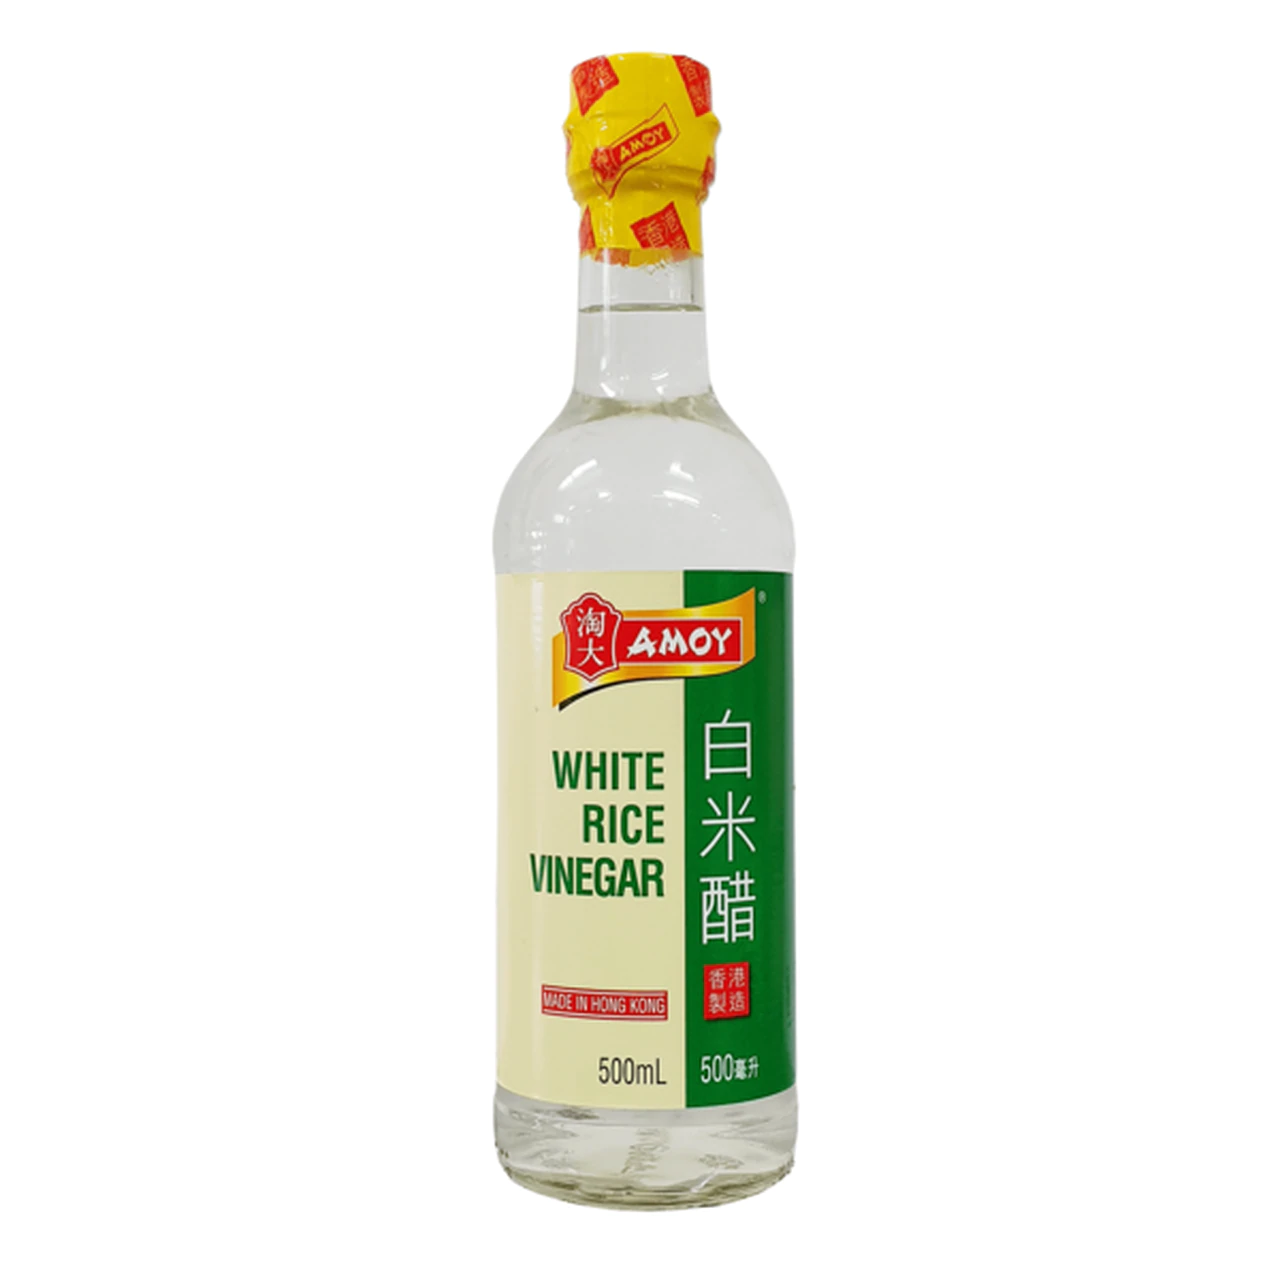 Amoy White Rice Vinegar